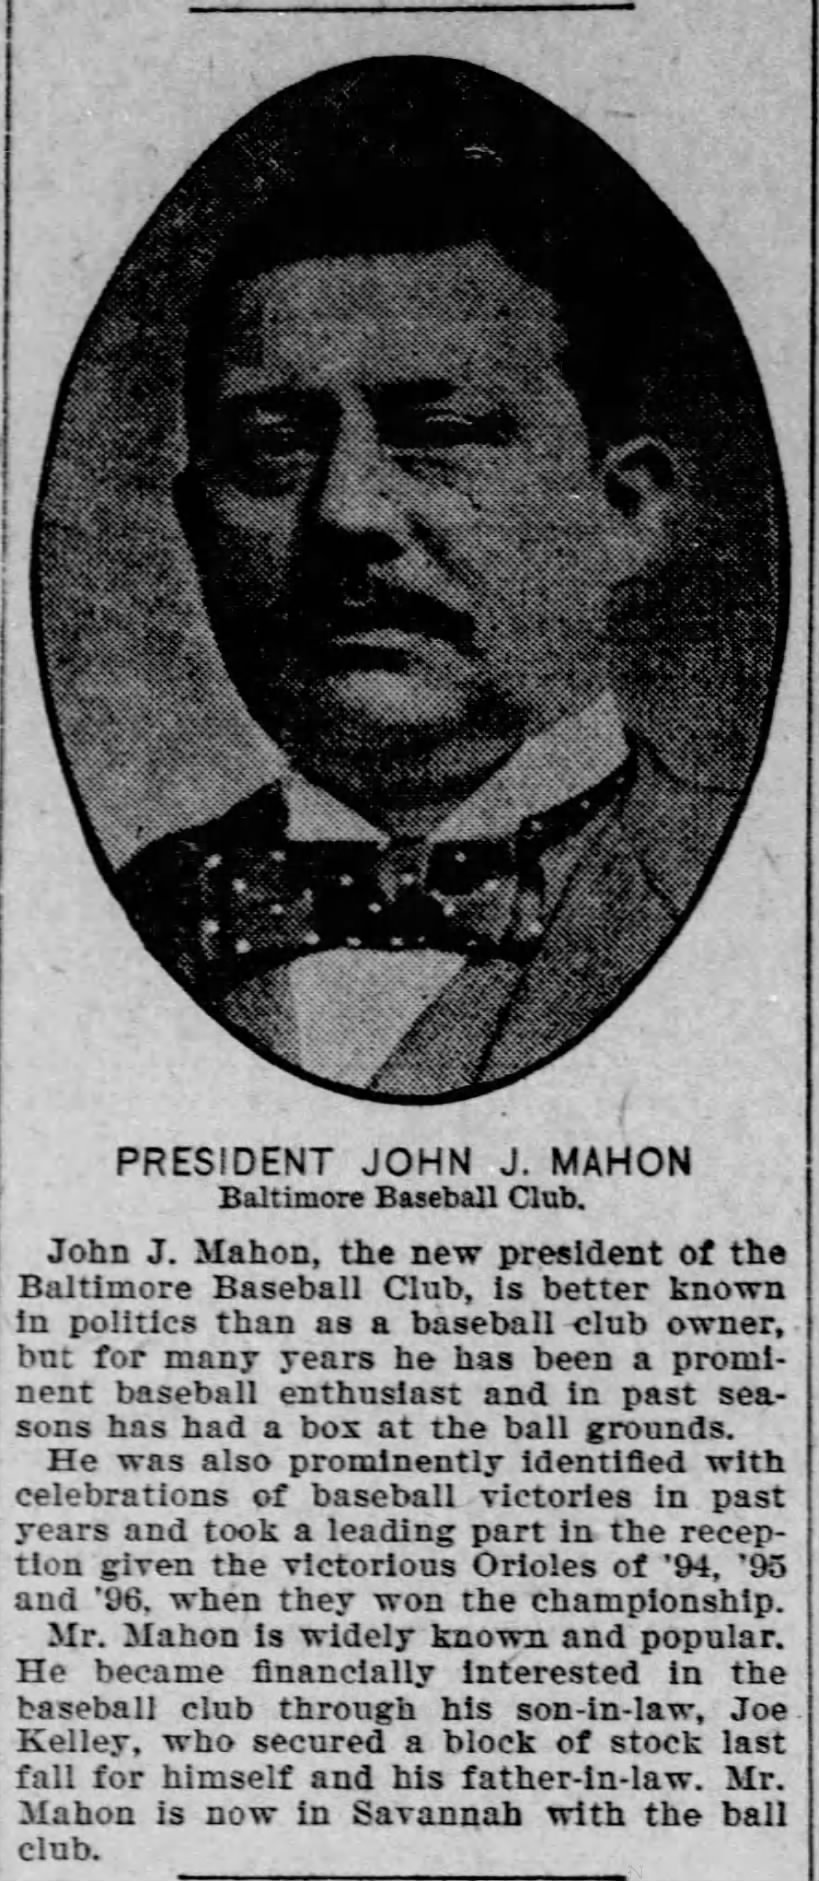 President John J. Mahon